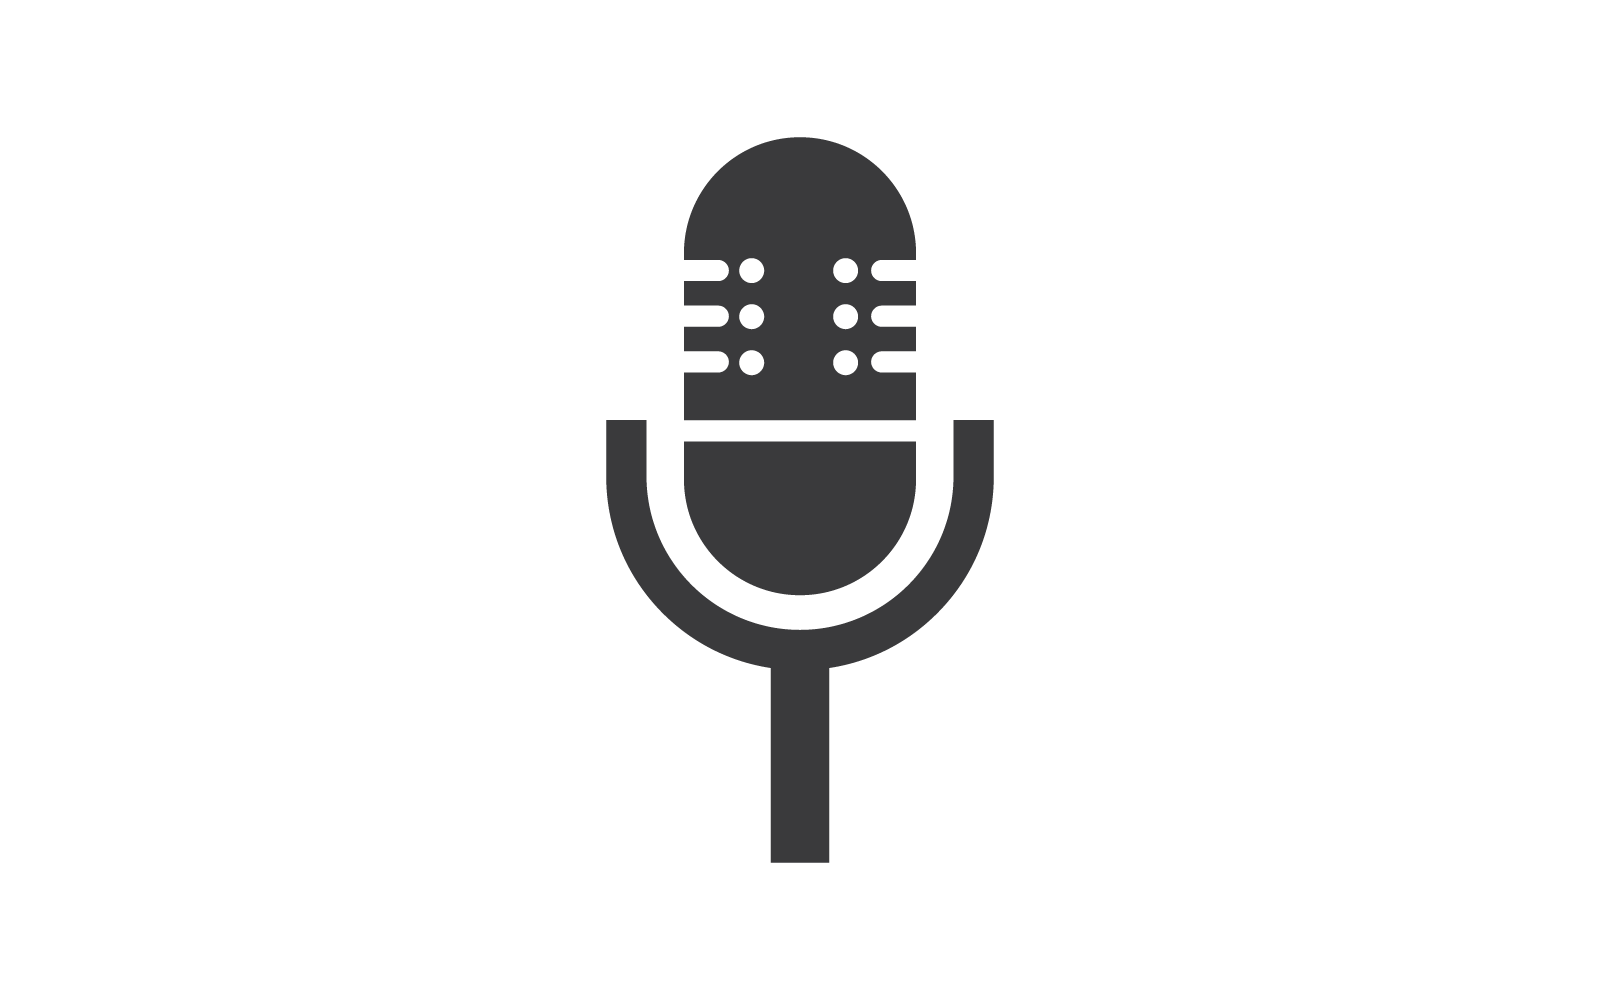 Conception plate de vecteur d'illustration de logo de podcast